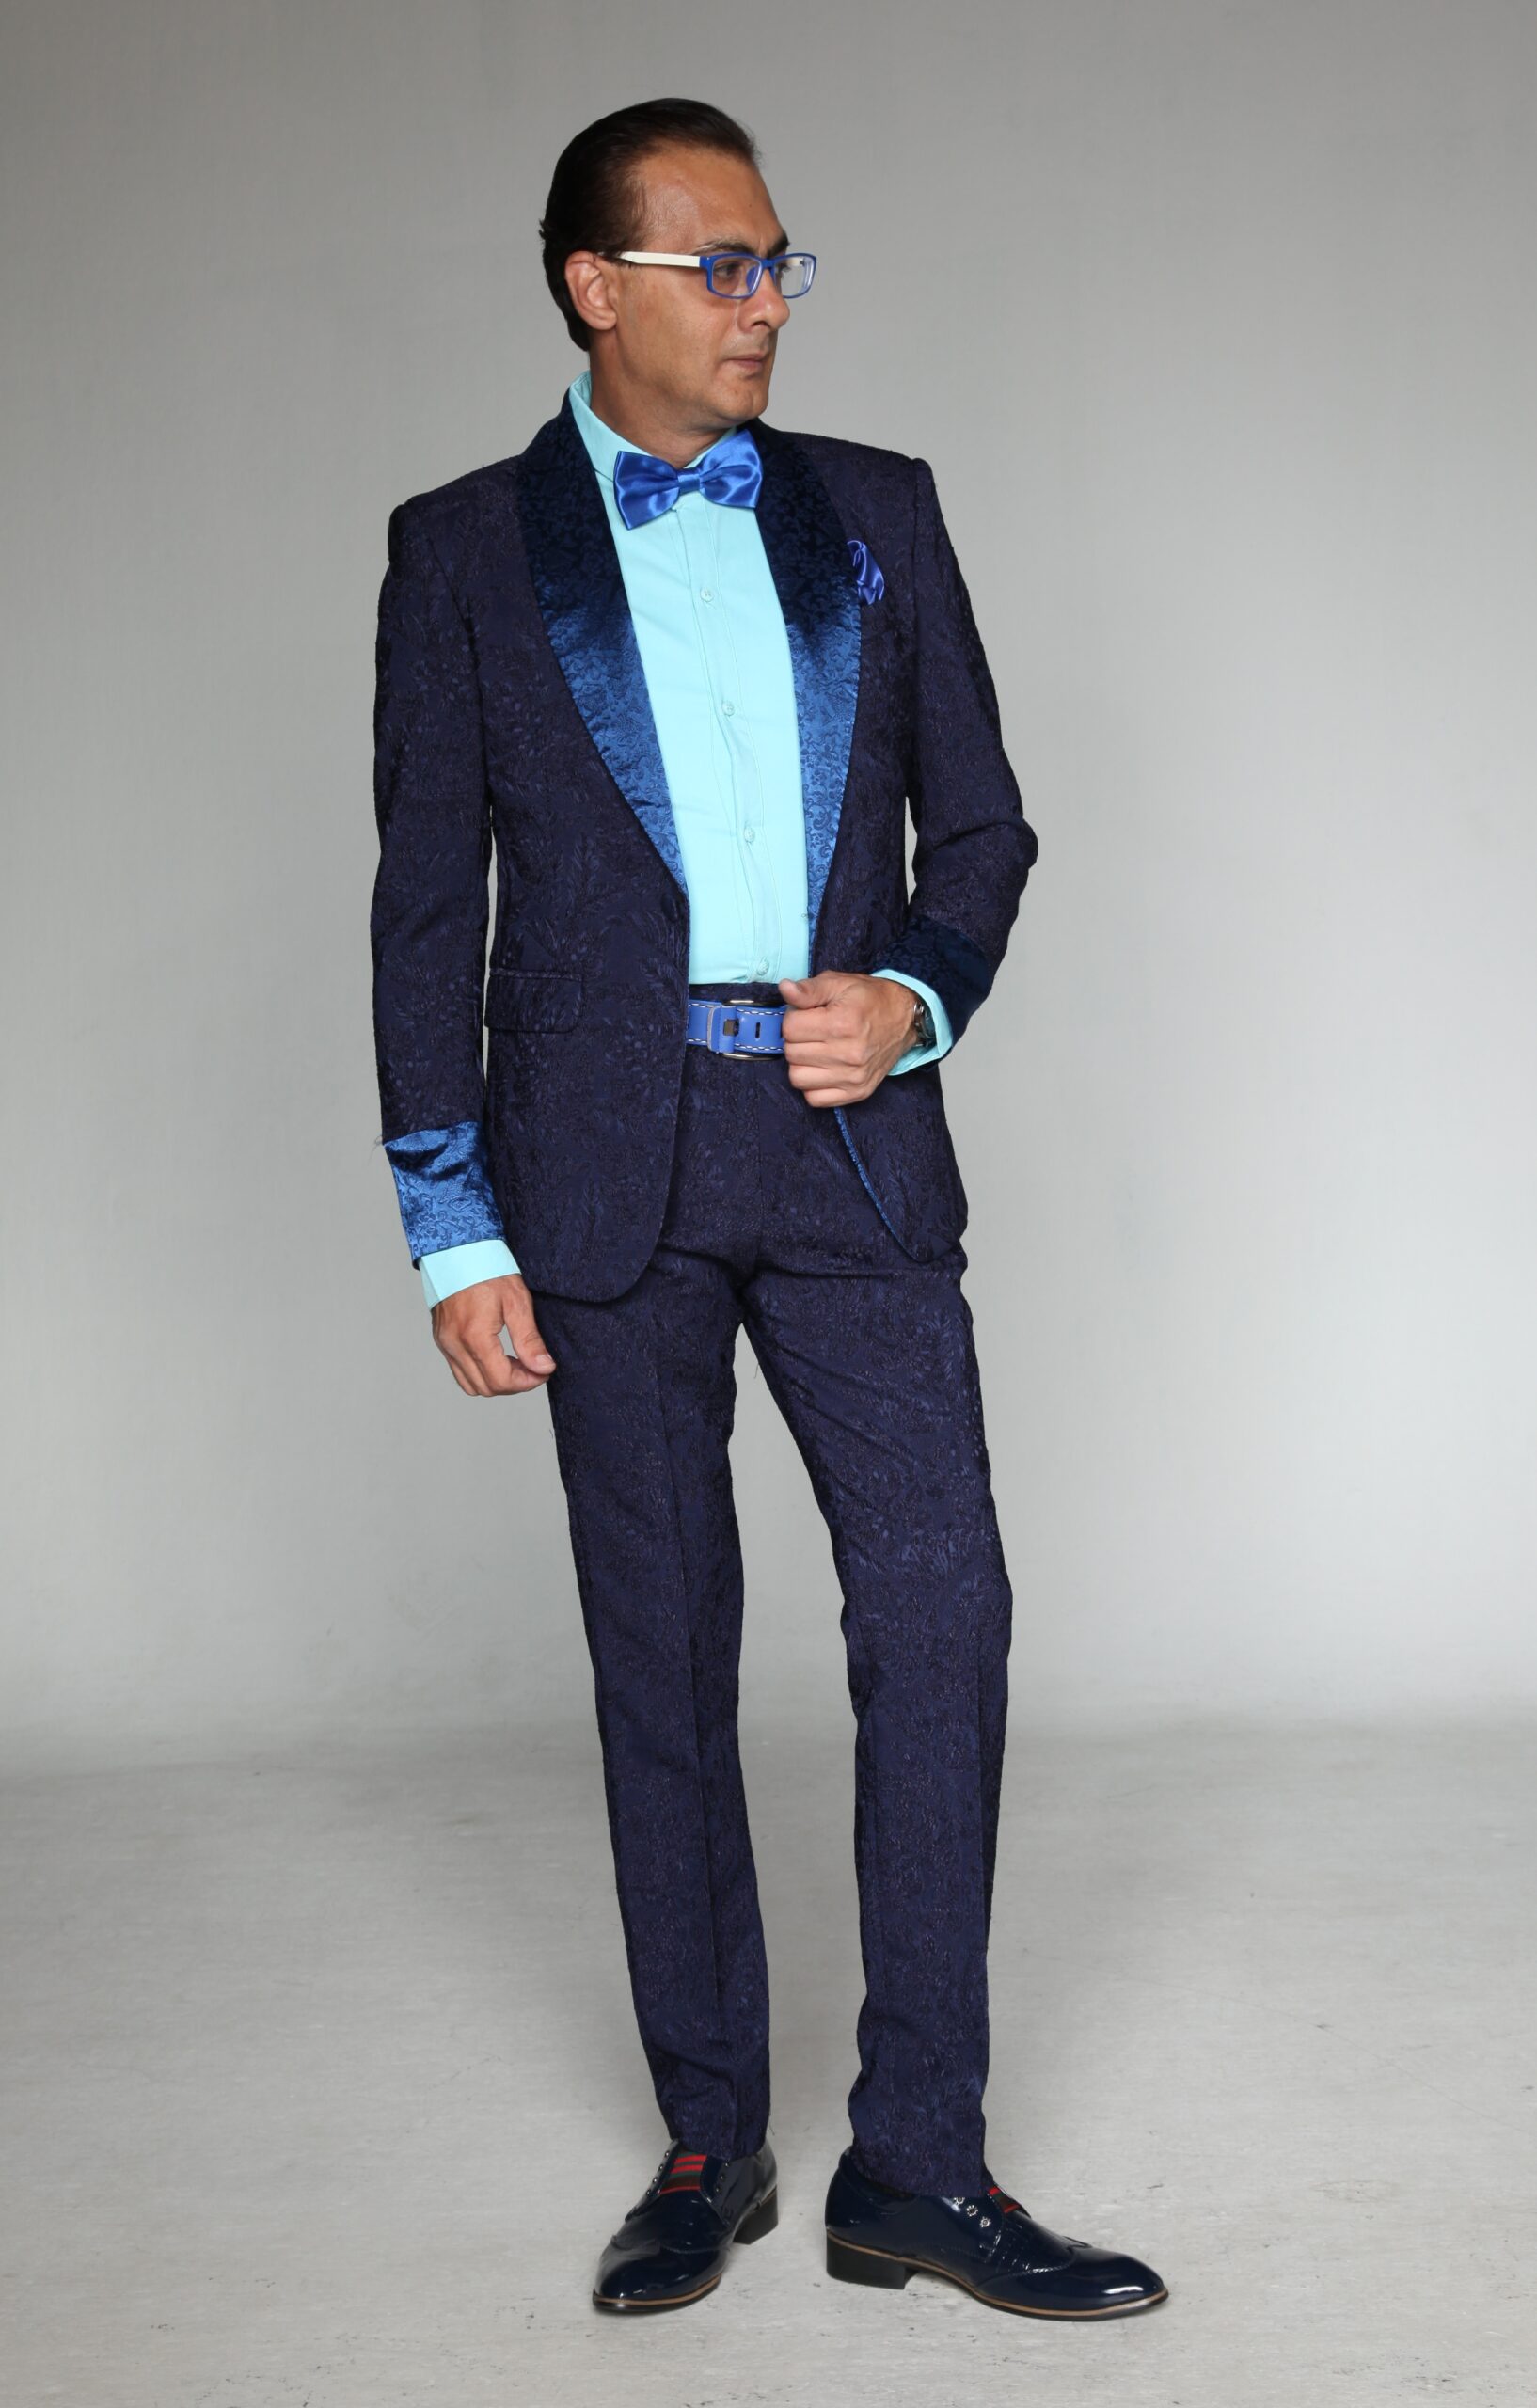 MST-5023-01-rent_rental_hire_tuxedo_suit_black_tie_suit_designer_suits_shop_tailor_tailors_singapore_wedding